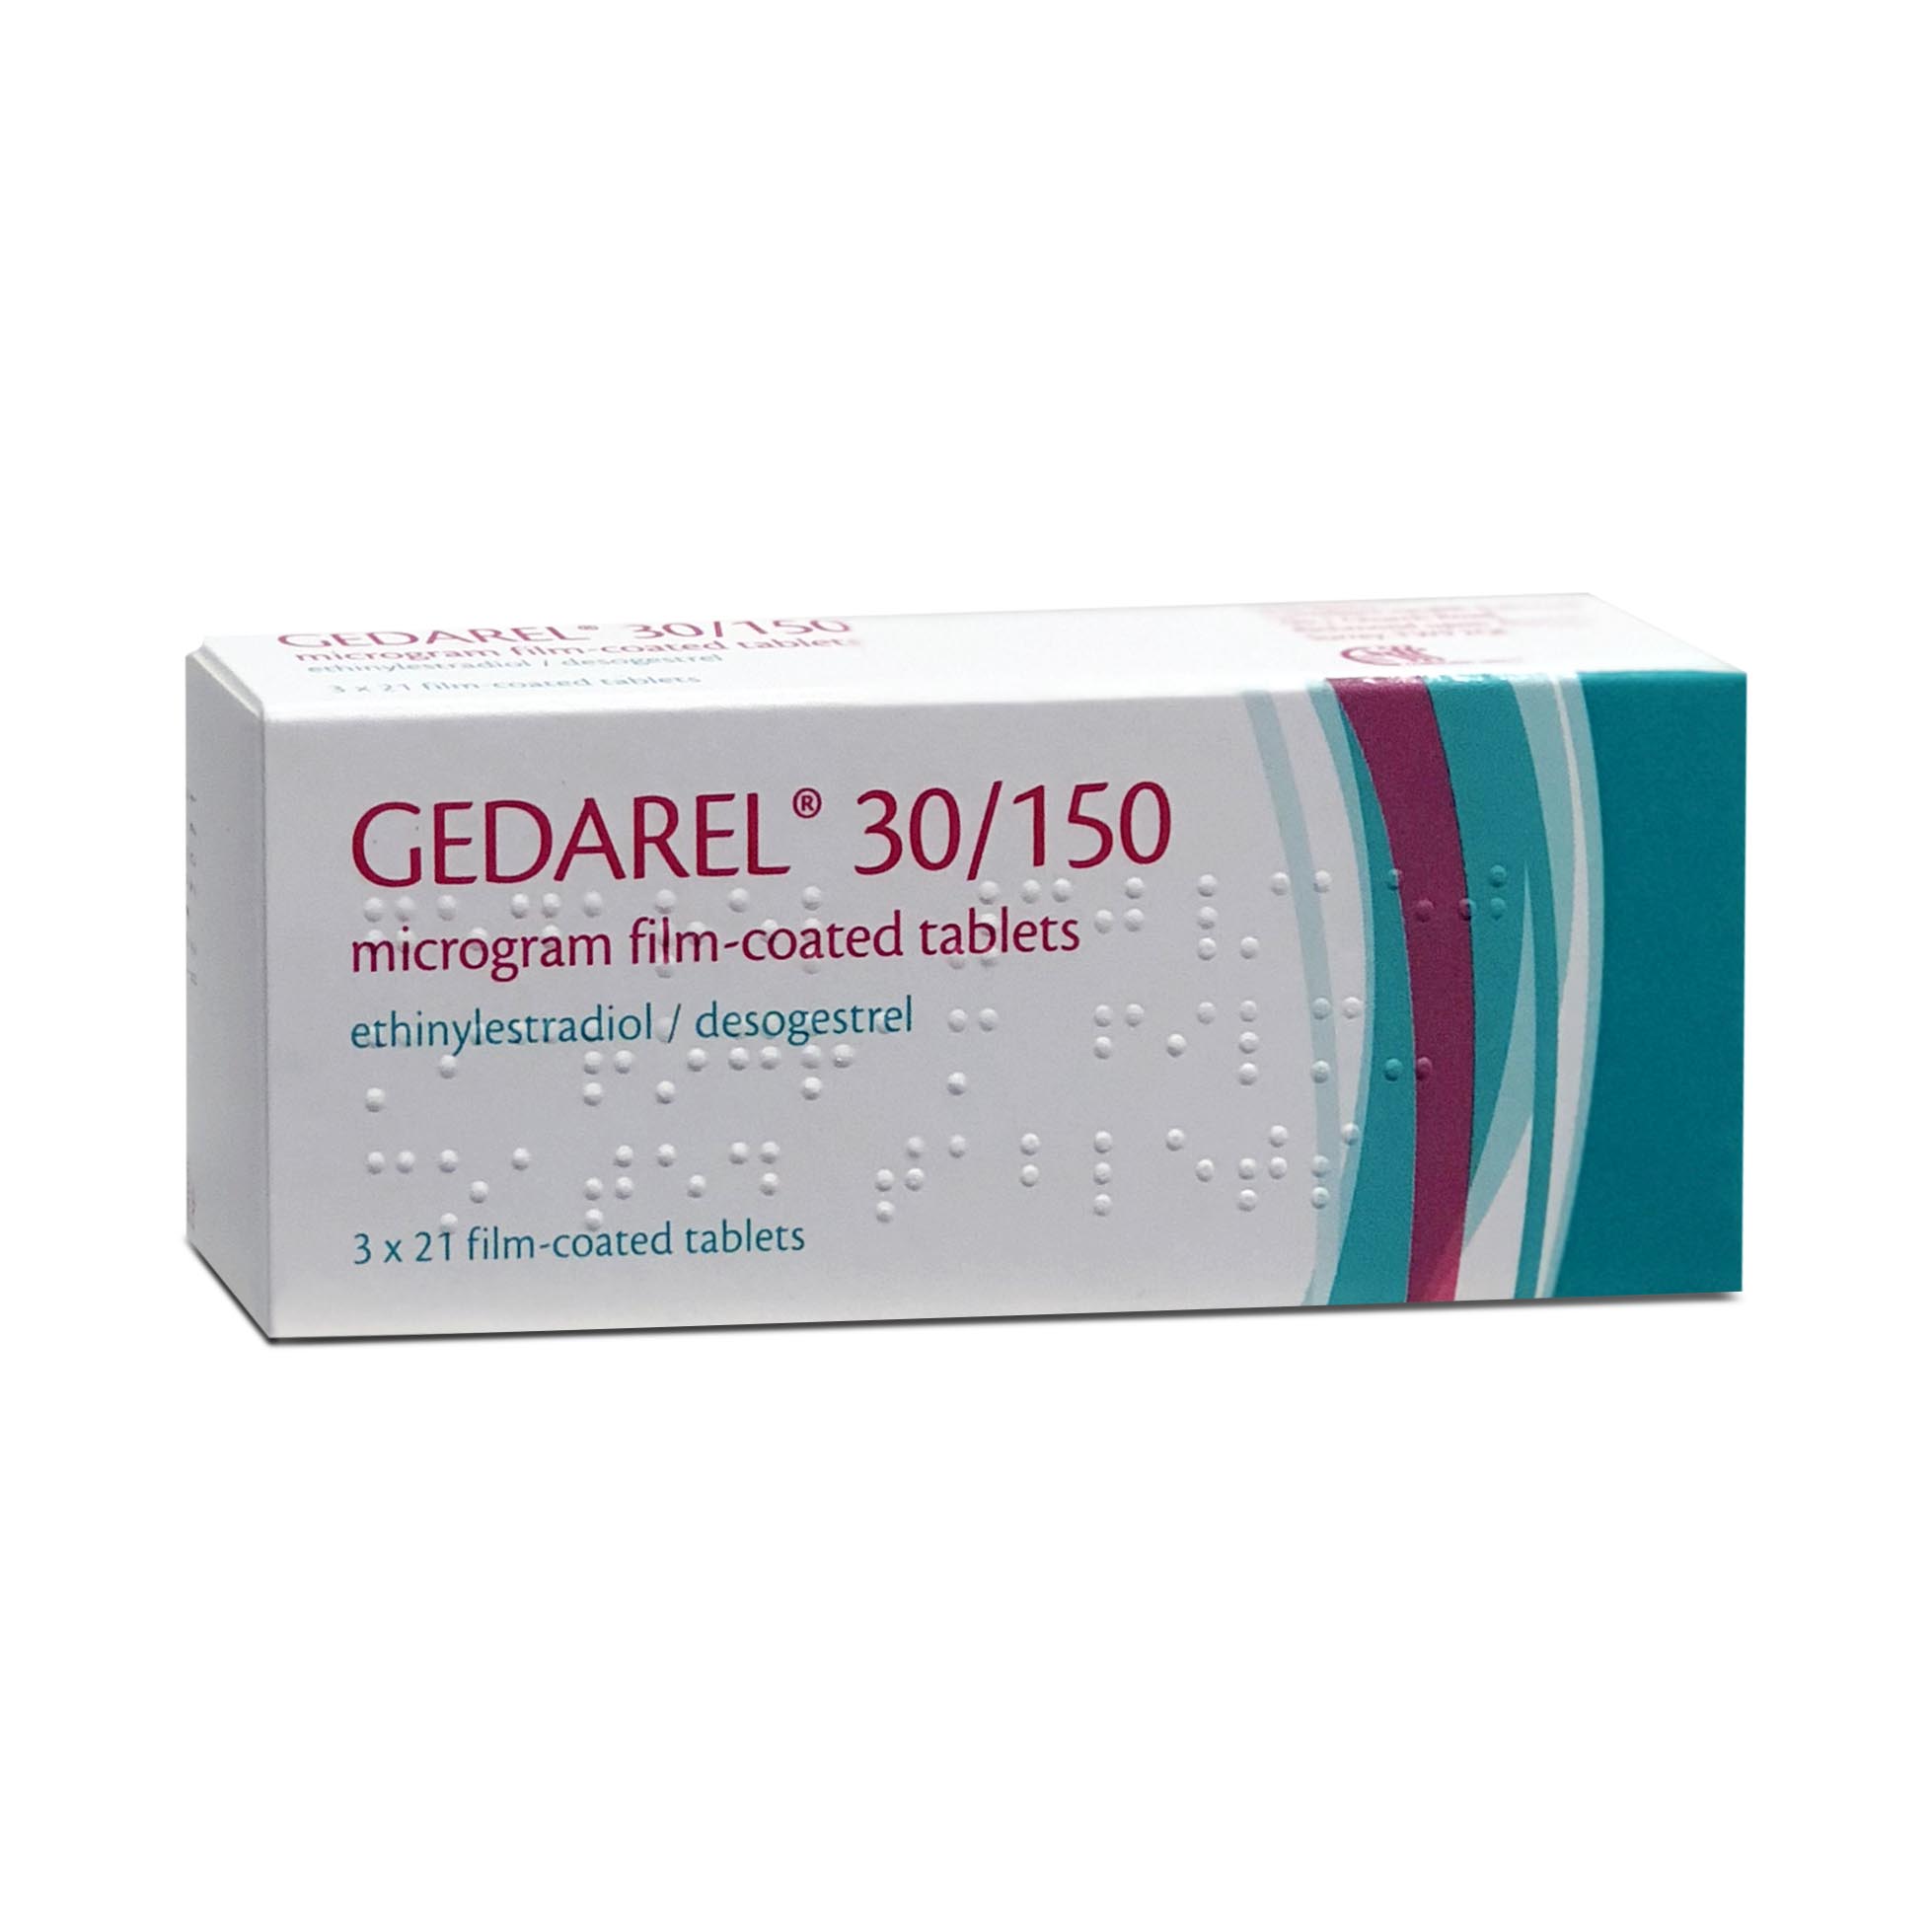 Benadryl dr 50ml price